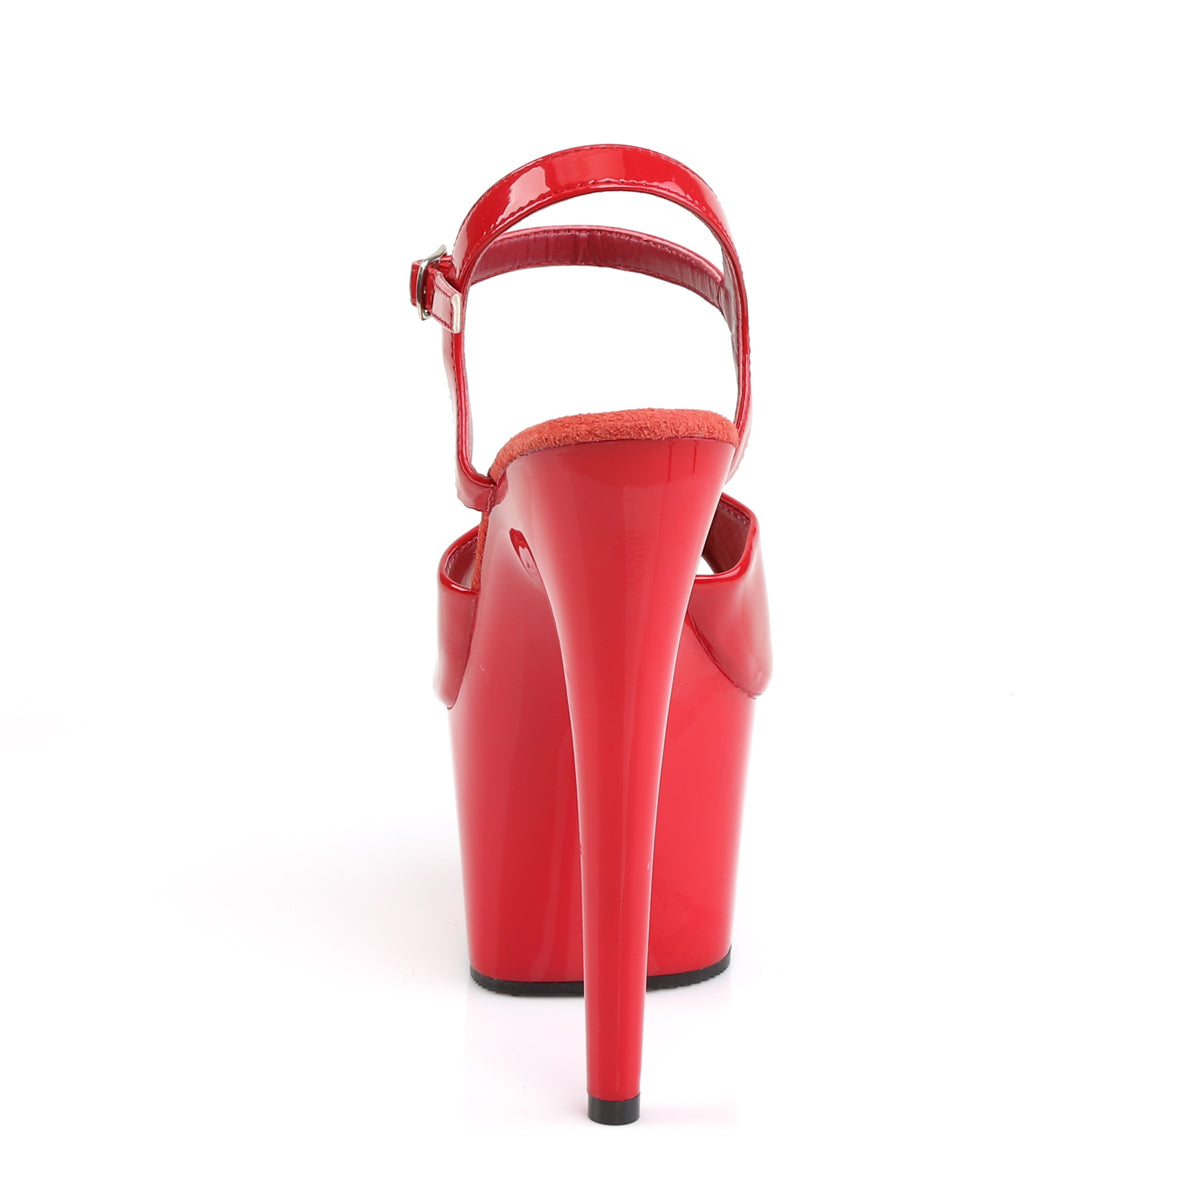 Pleaser Sandales pour femmes ADORE-709 rouge / rouge